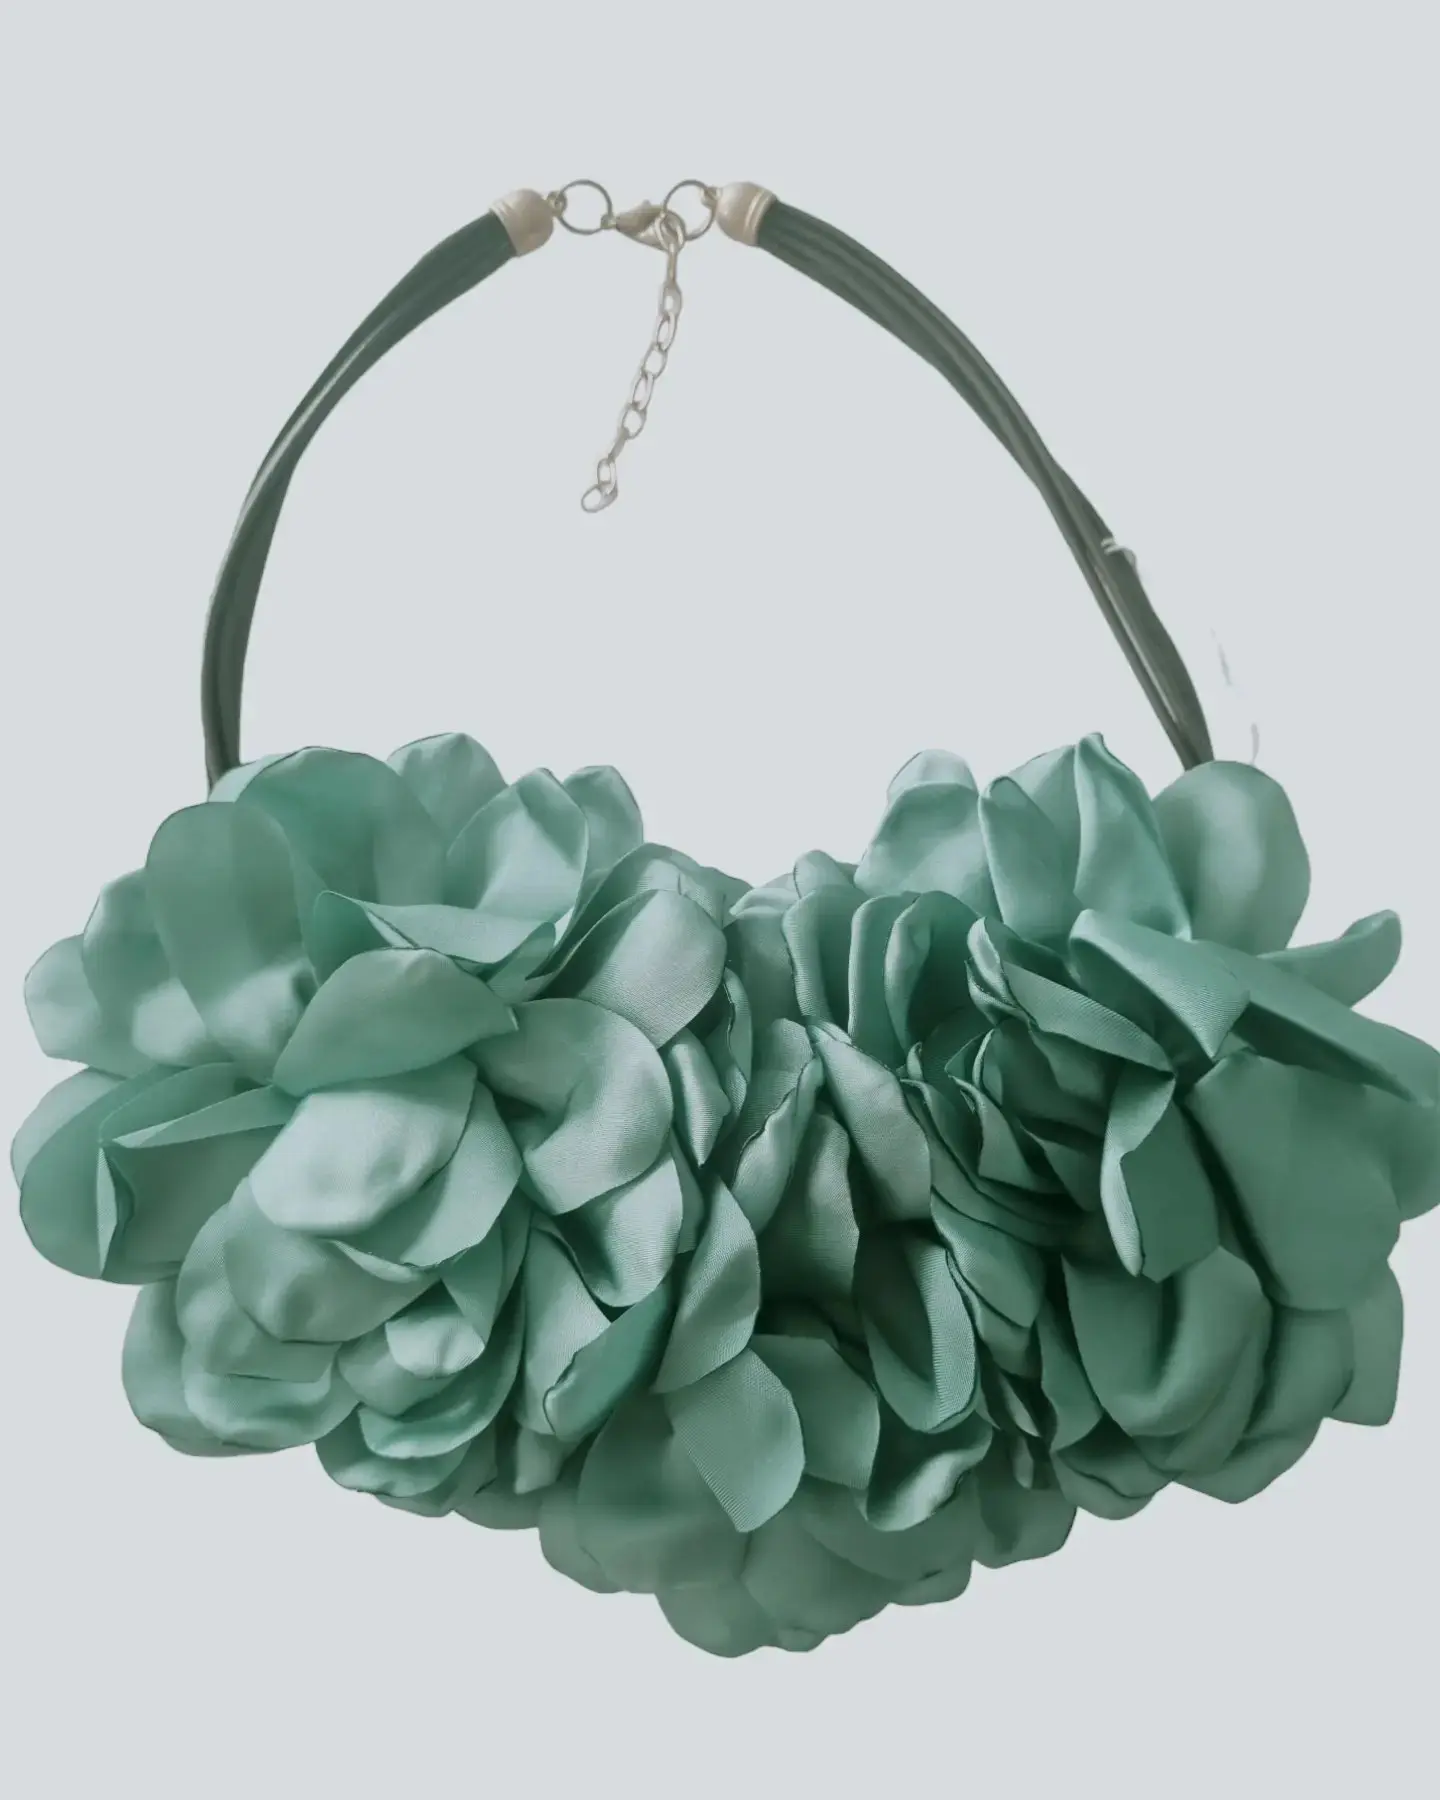 Collana girocollo realizzata con fiori in tessuto.
Lunghezza regolabile 58cm
Colori verde